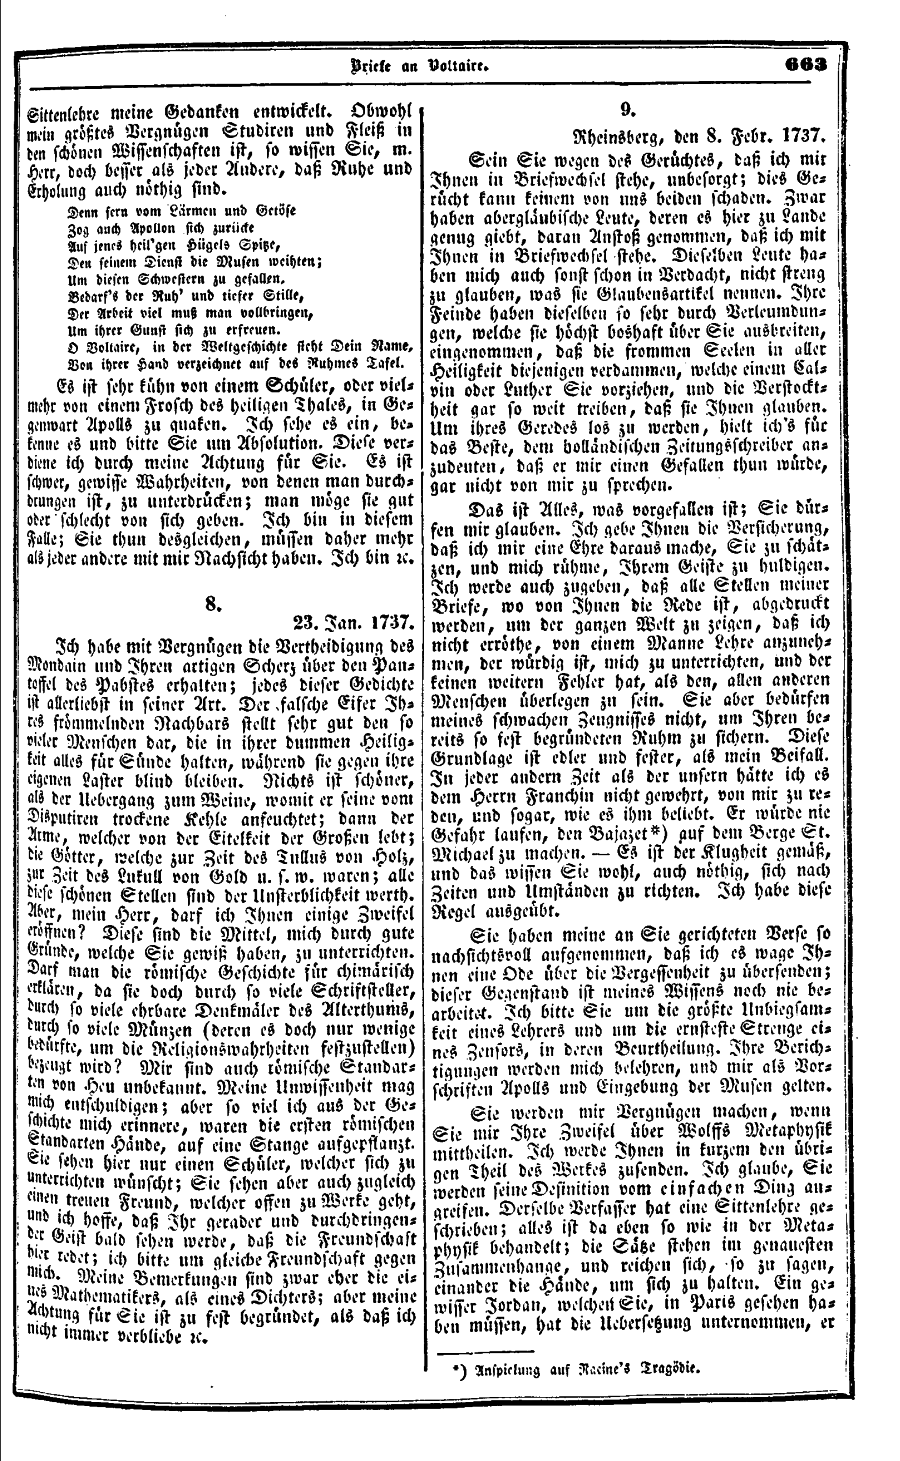 S. 663, Obj. 3